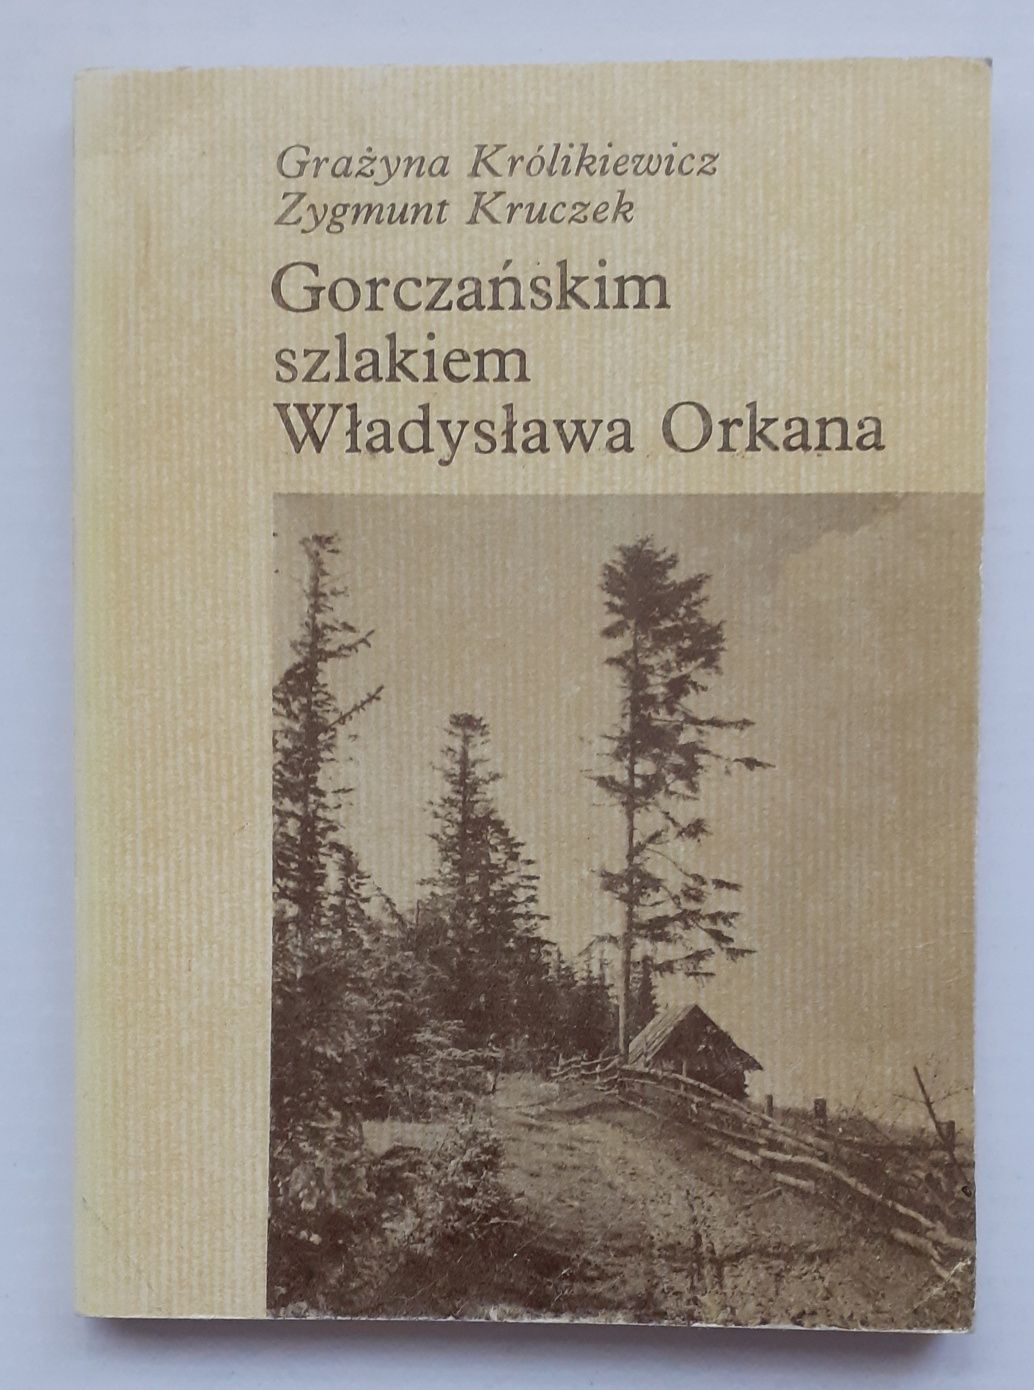 Gorczańskim szlakiem Władysława Orkana.